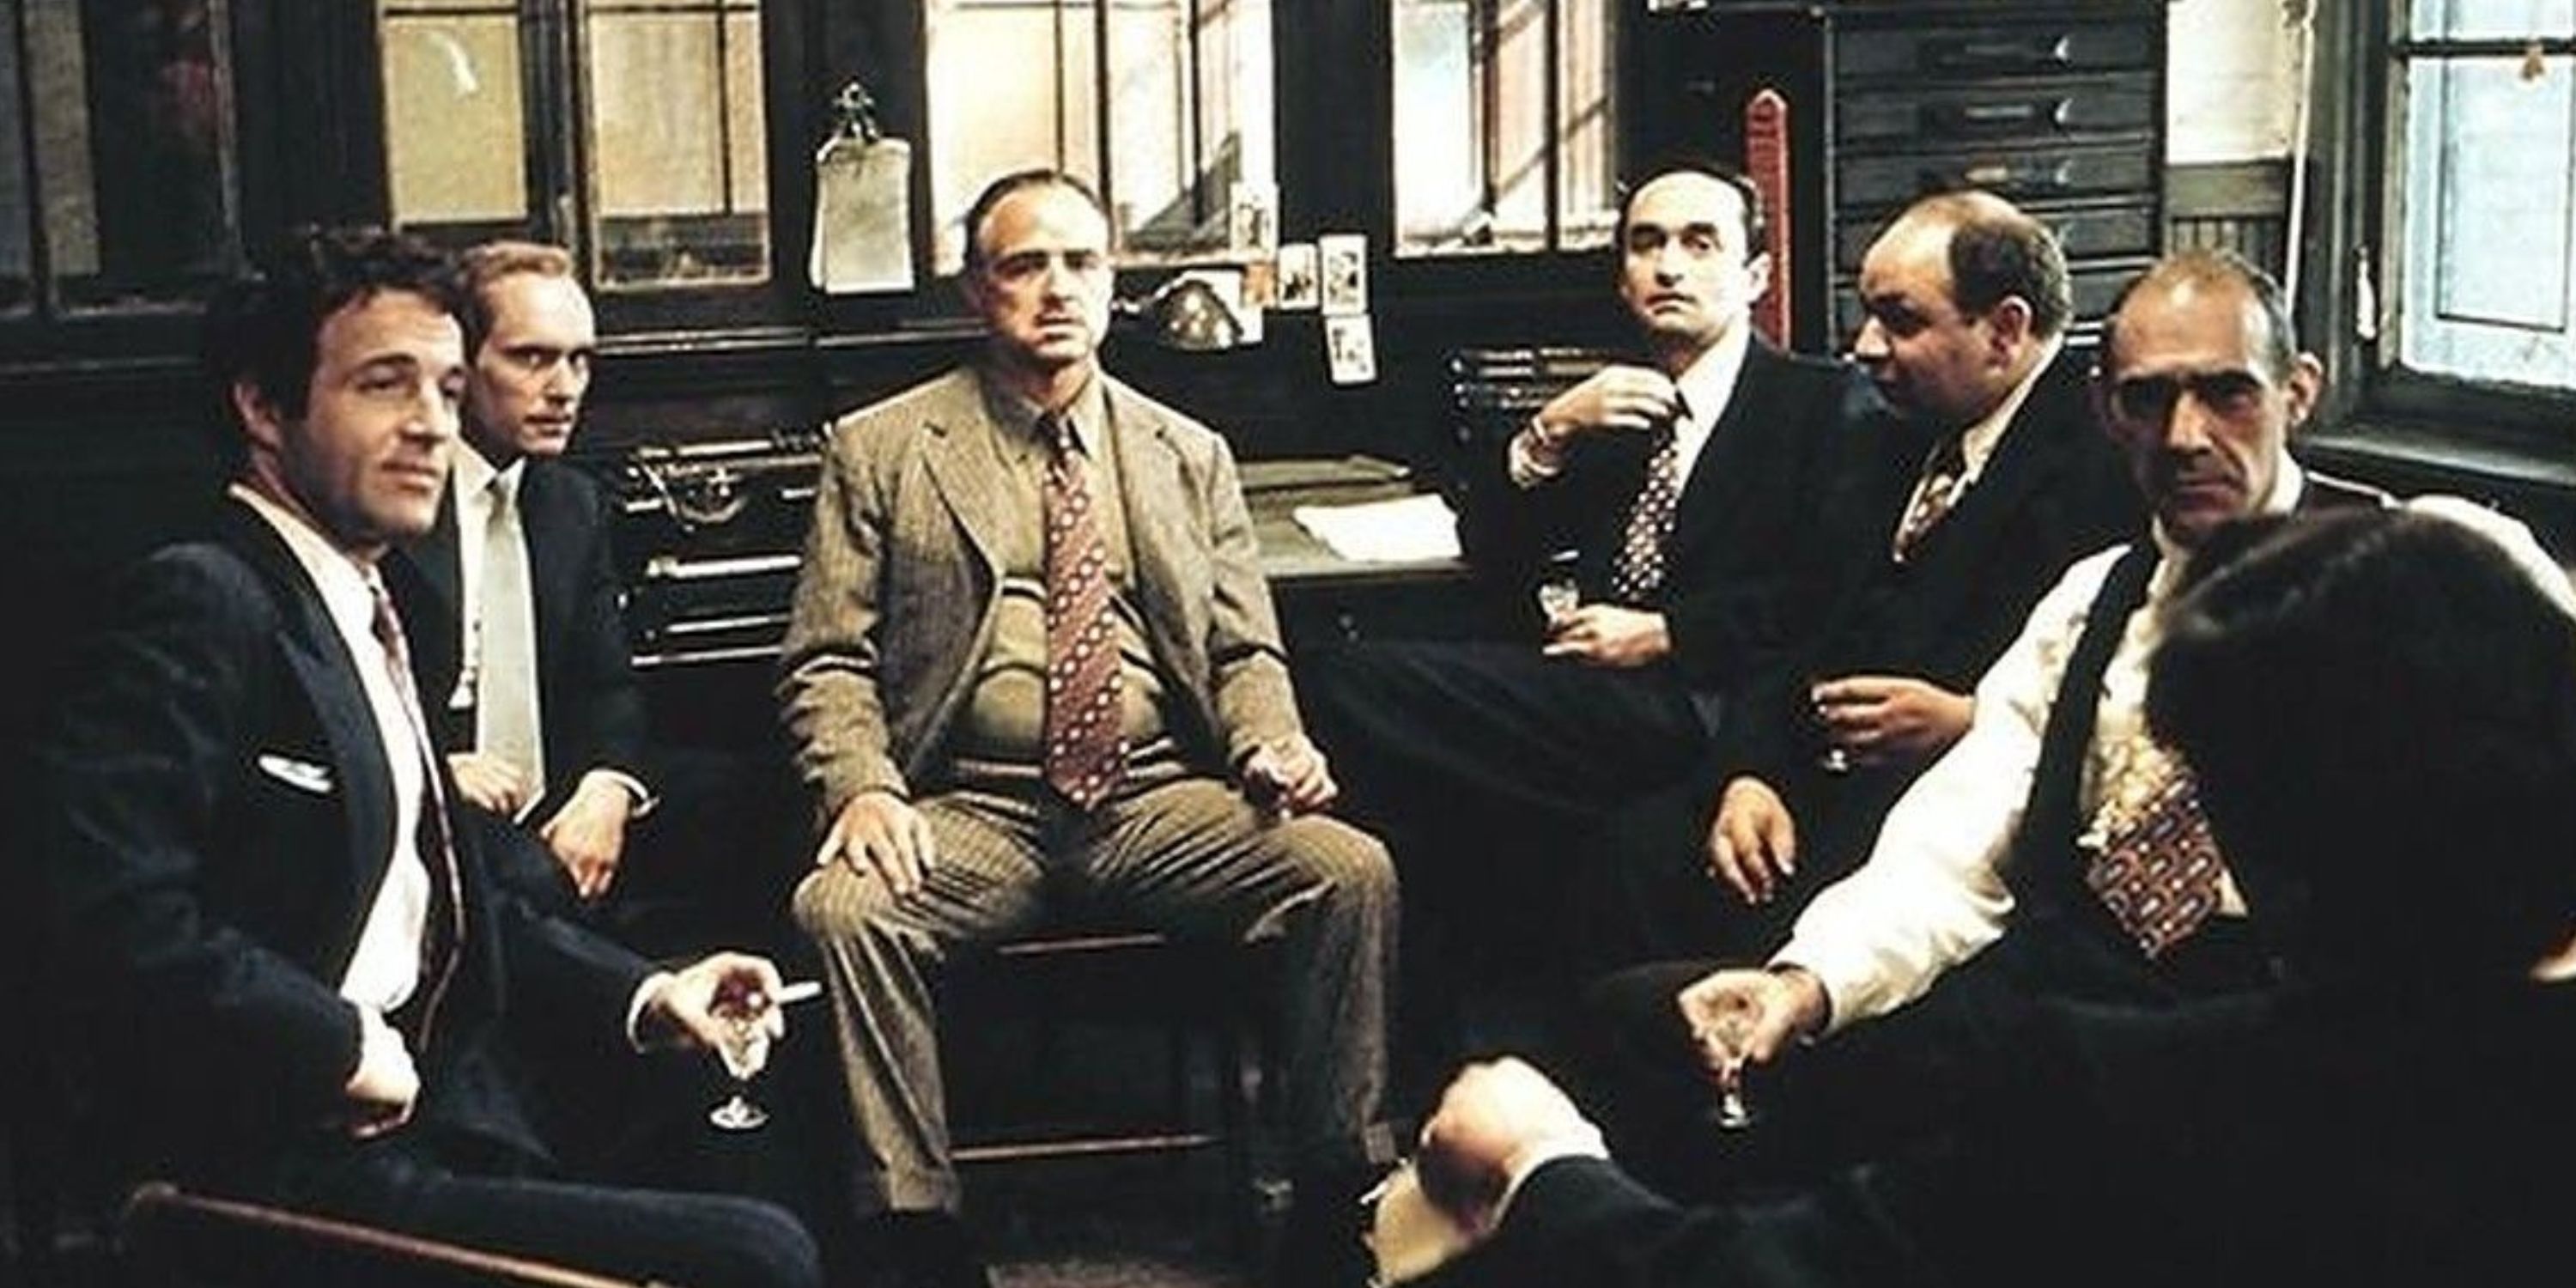 Vito Corleone talking to Sollozzo in The Godfather